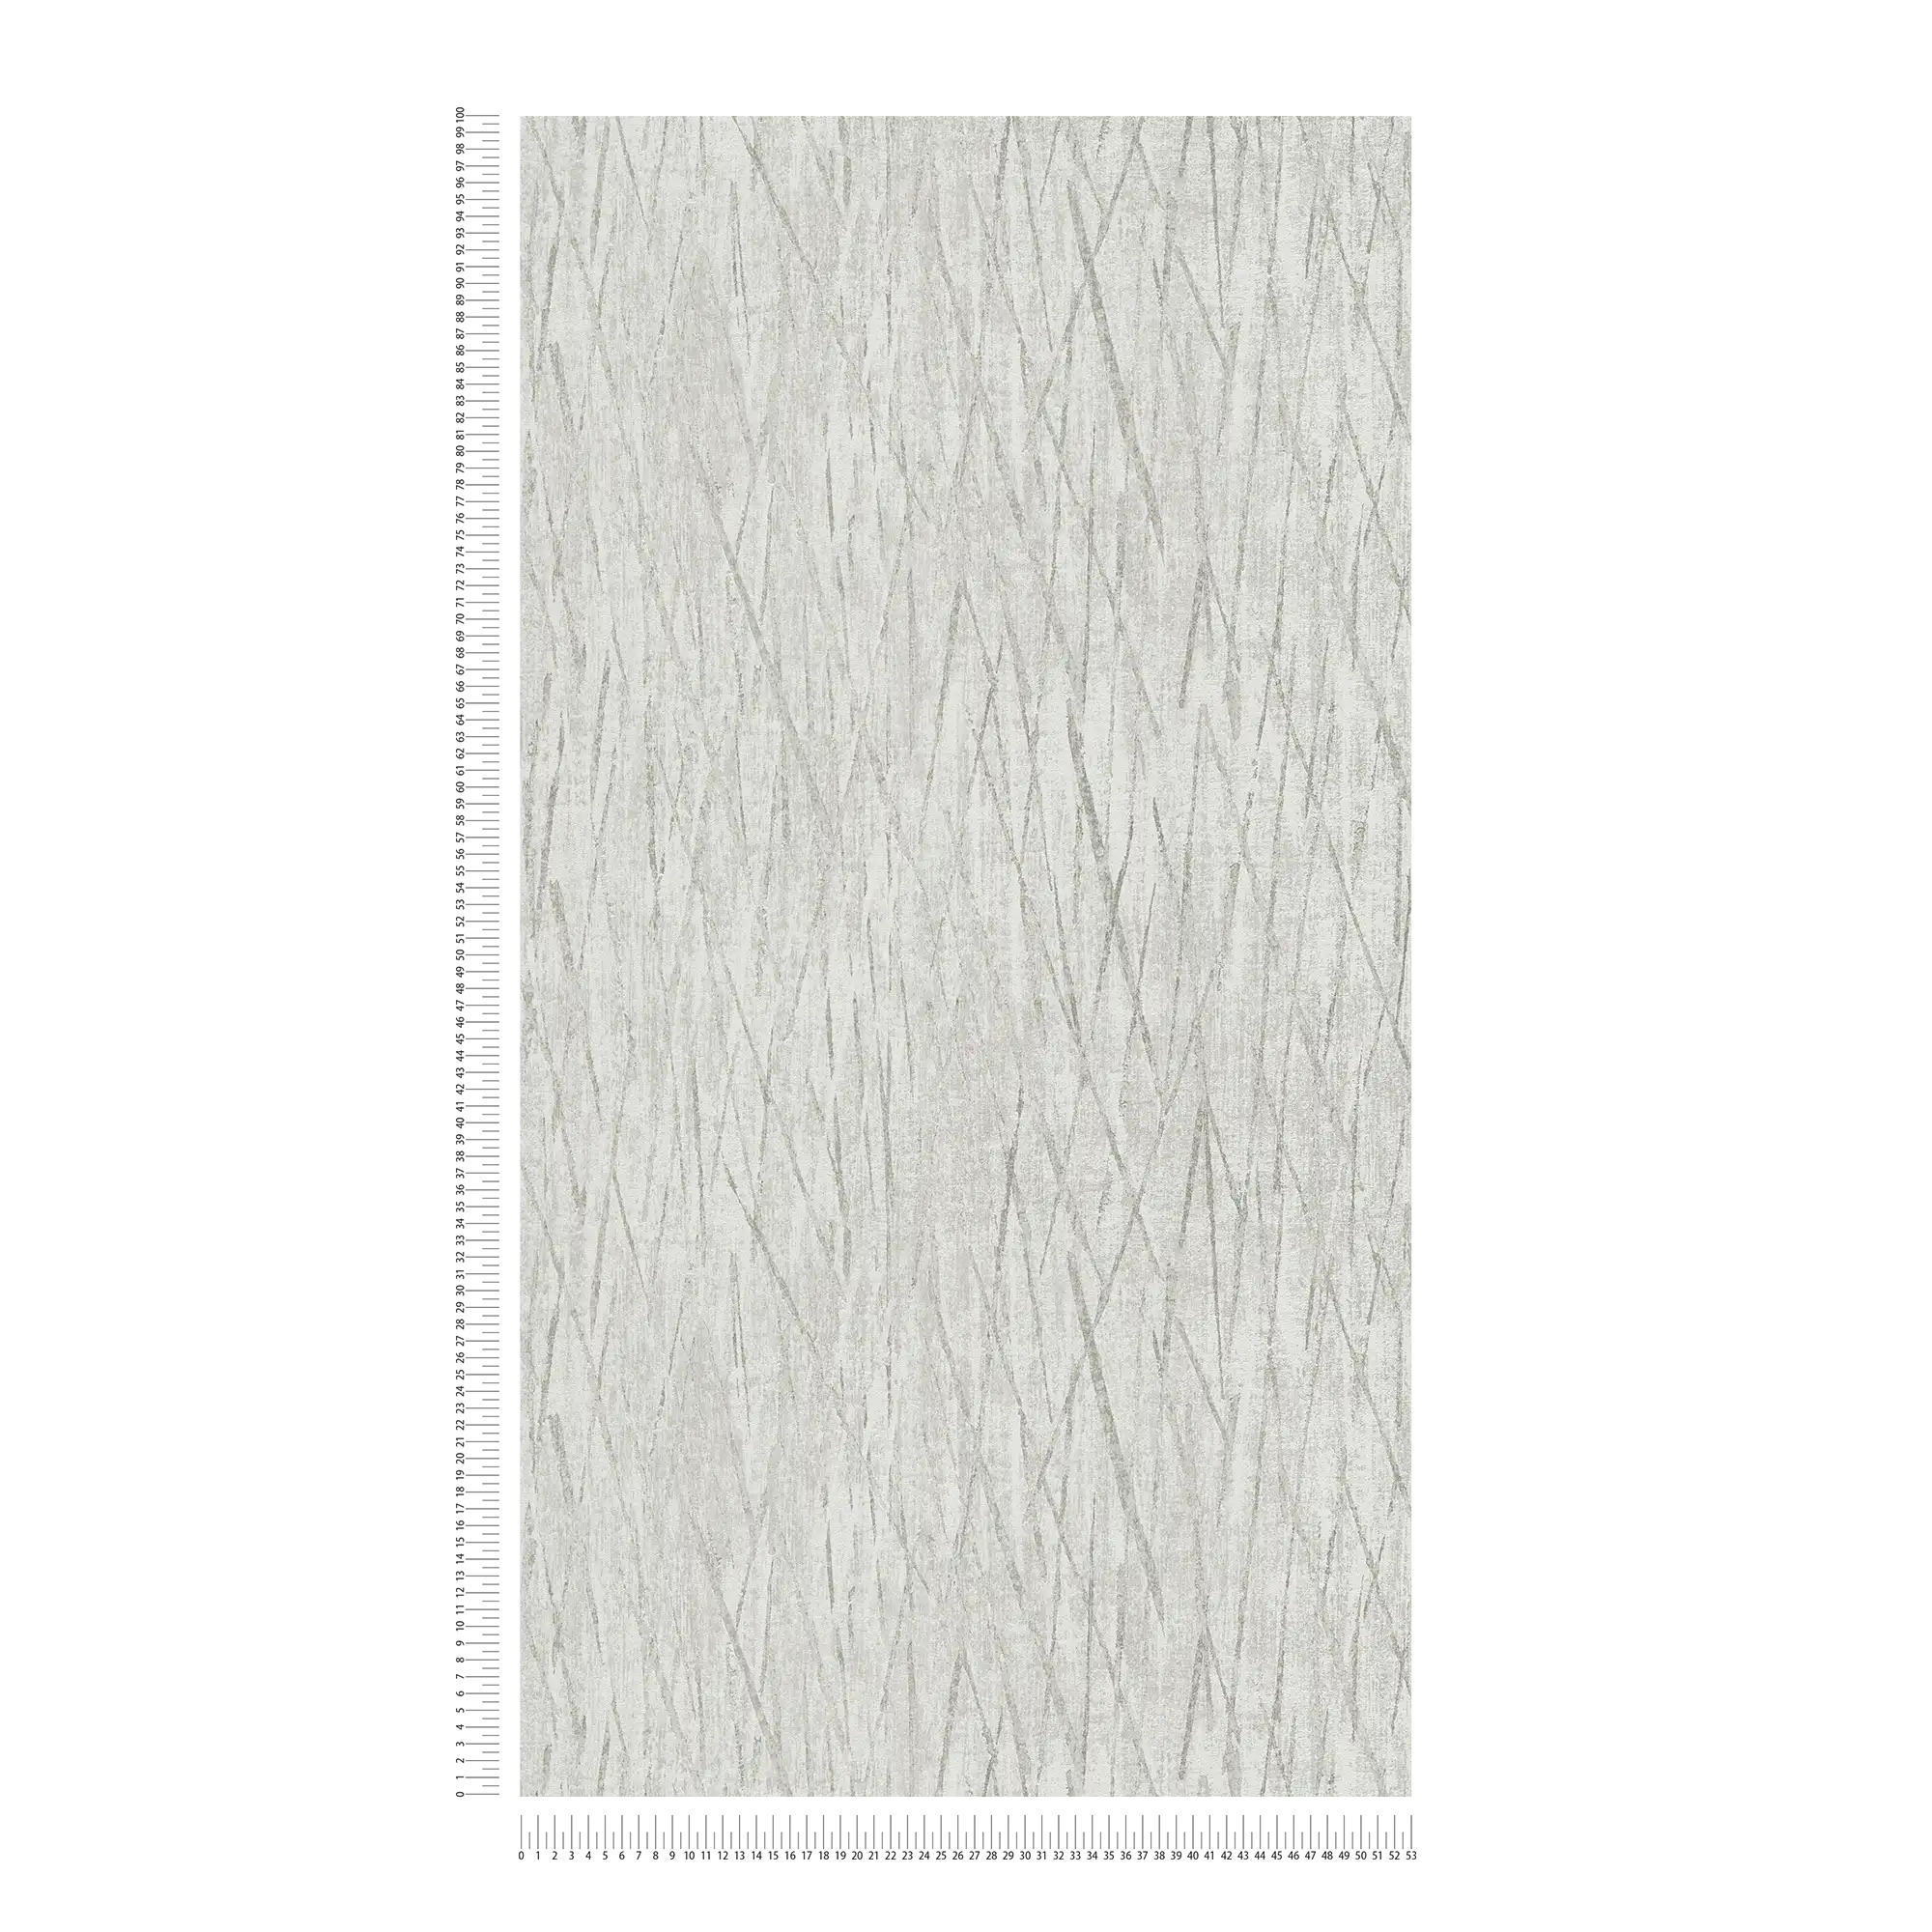             Carta da parati testurizzata con colori metallizzati - grigio, metallizzato
        